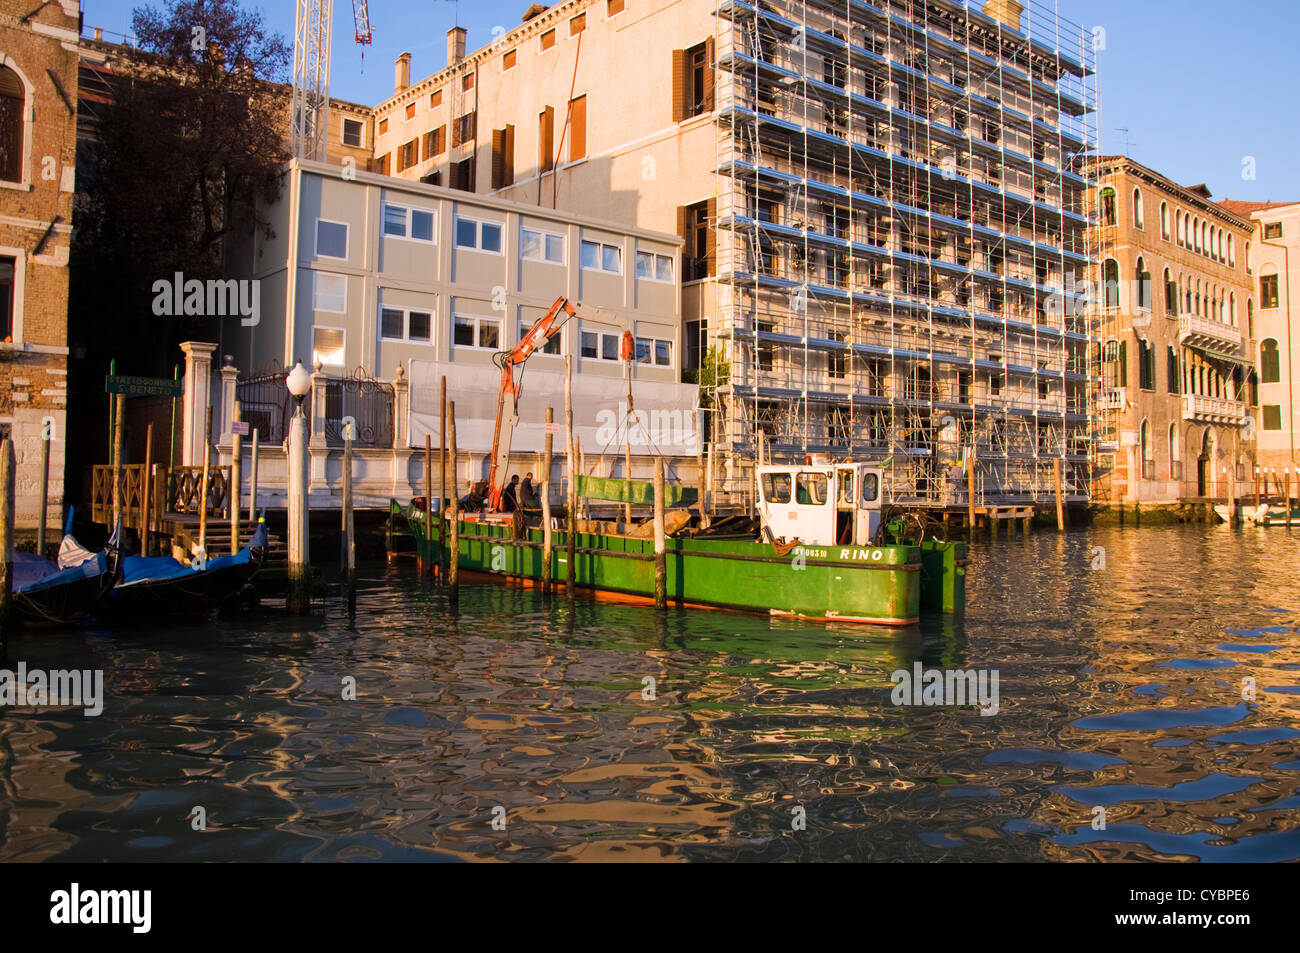 Lavori di restauro di un palazzo sul Canal Grande Venezia Foto Stock